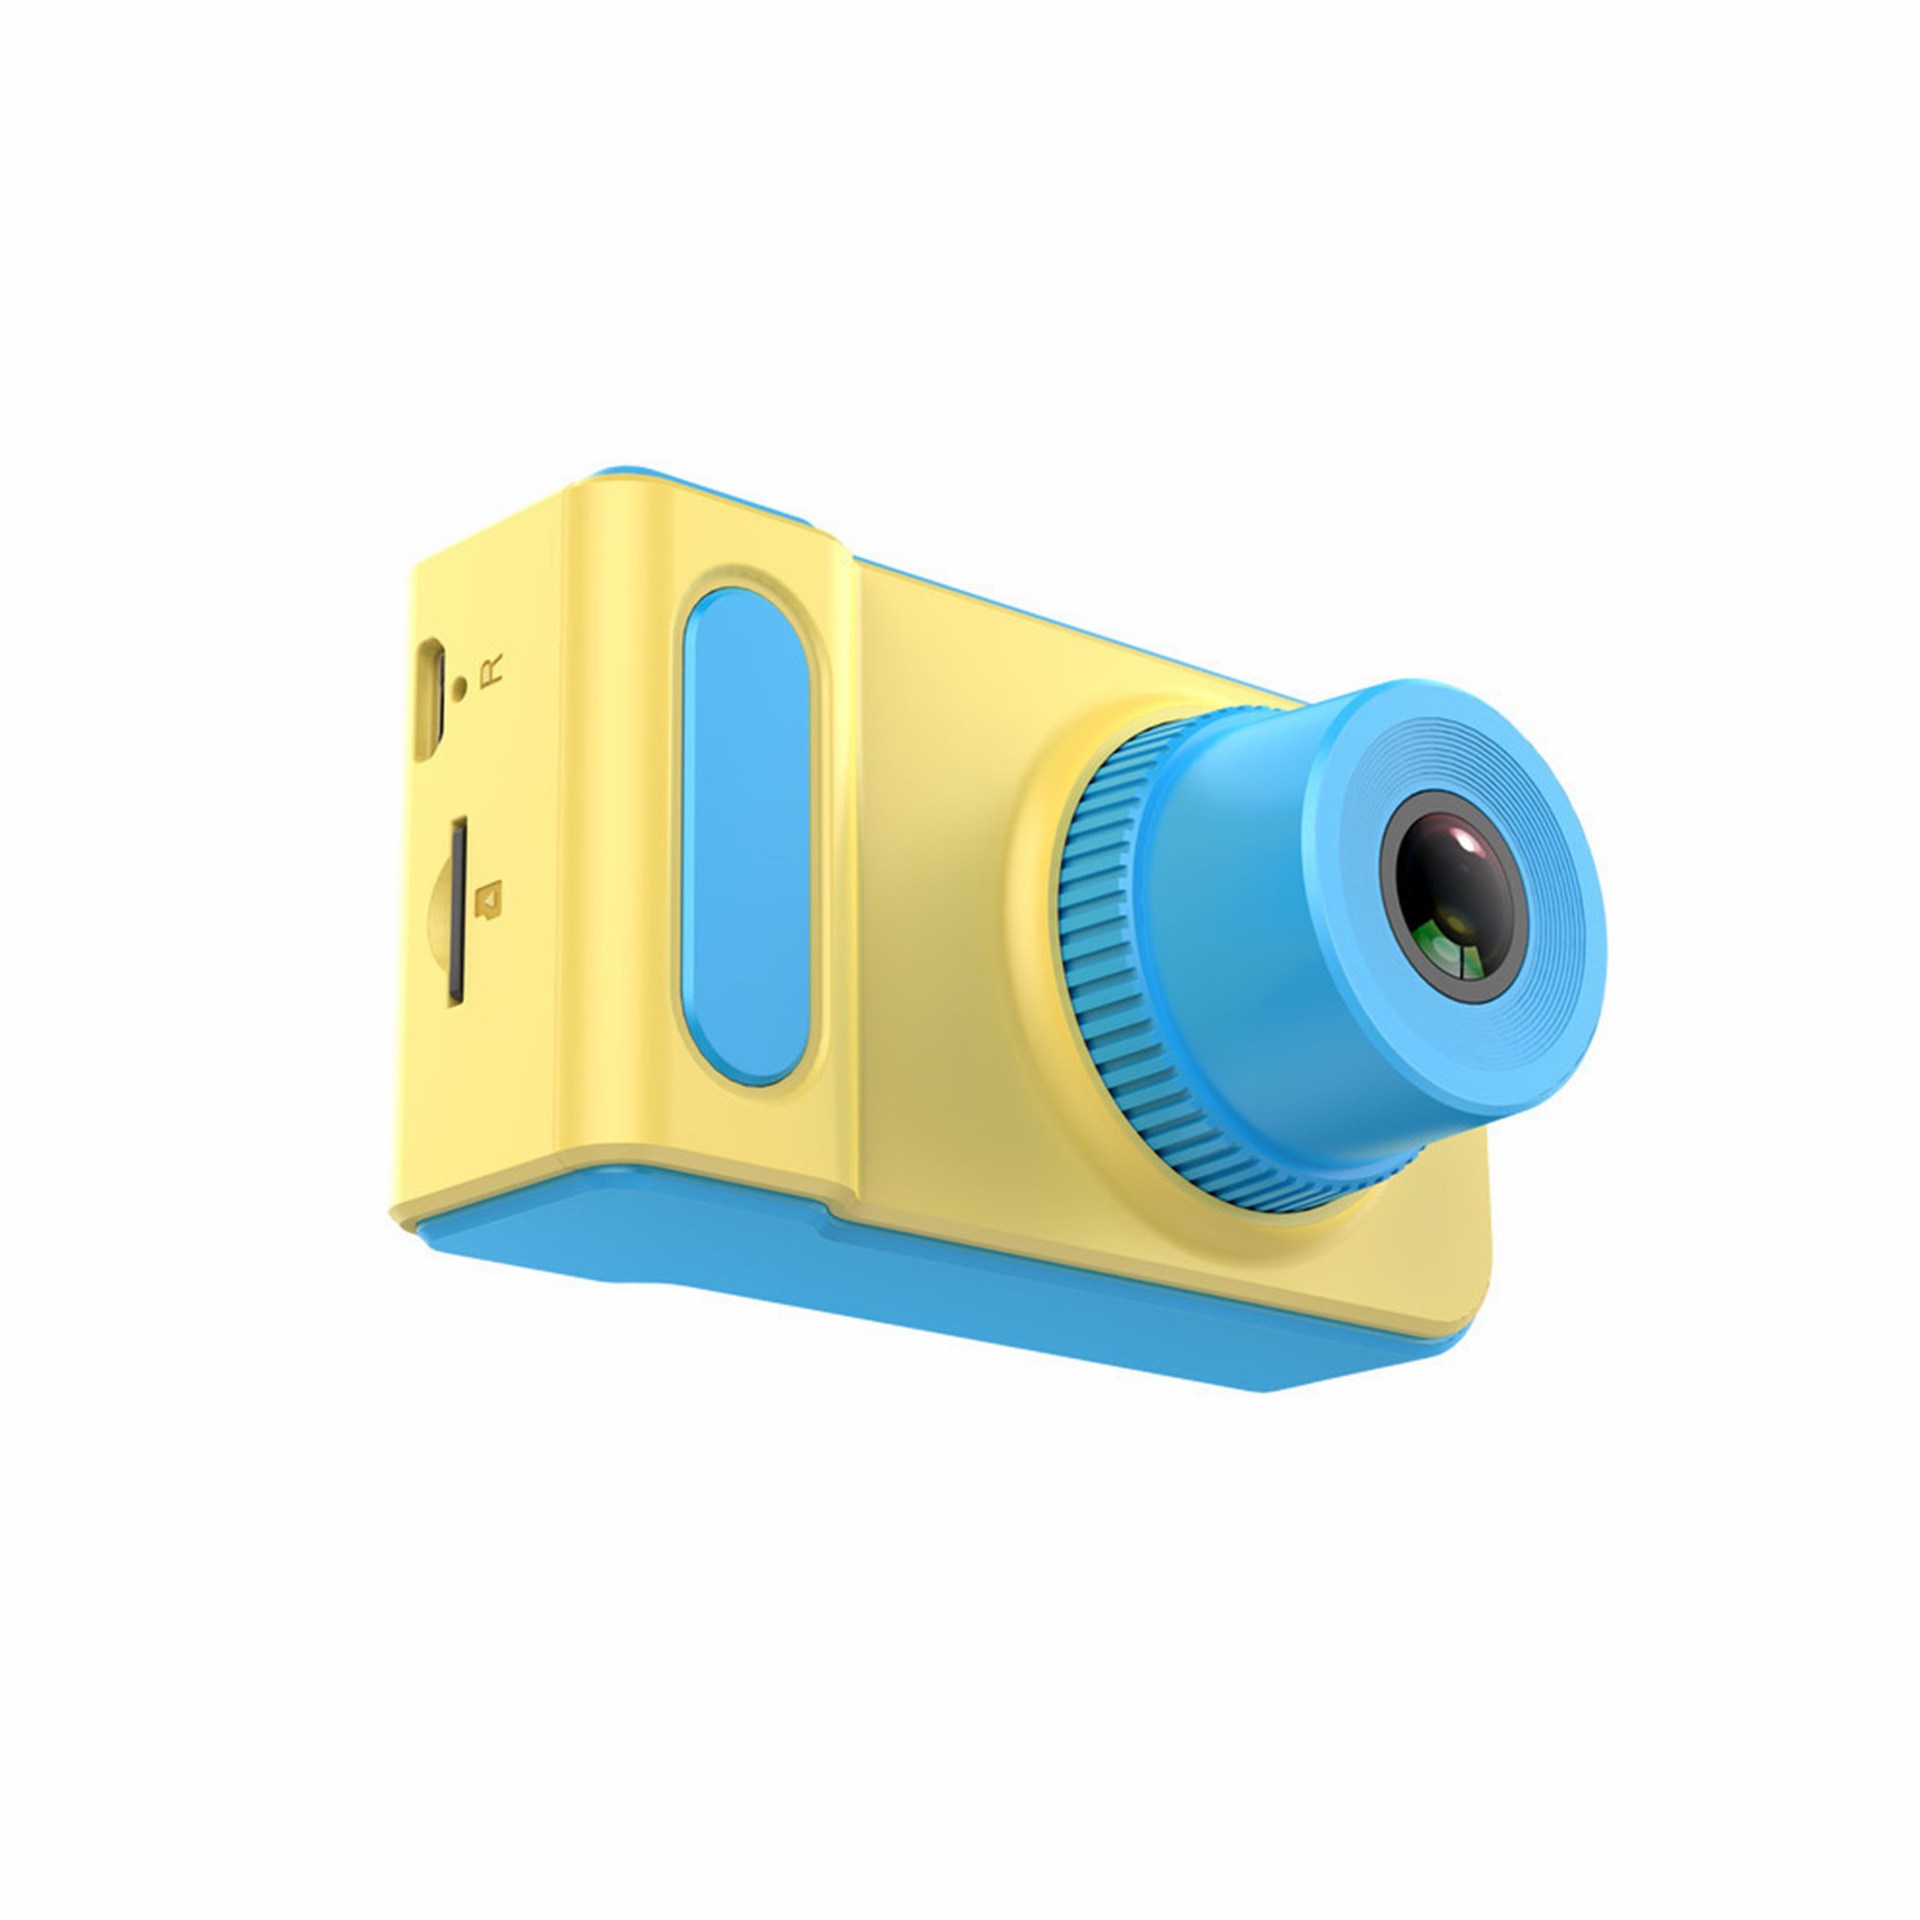 新款儿童相机 小孩卡通数码照相机 小单反运动摄像dv玩具礼品